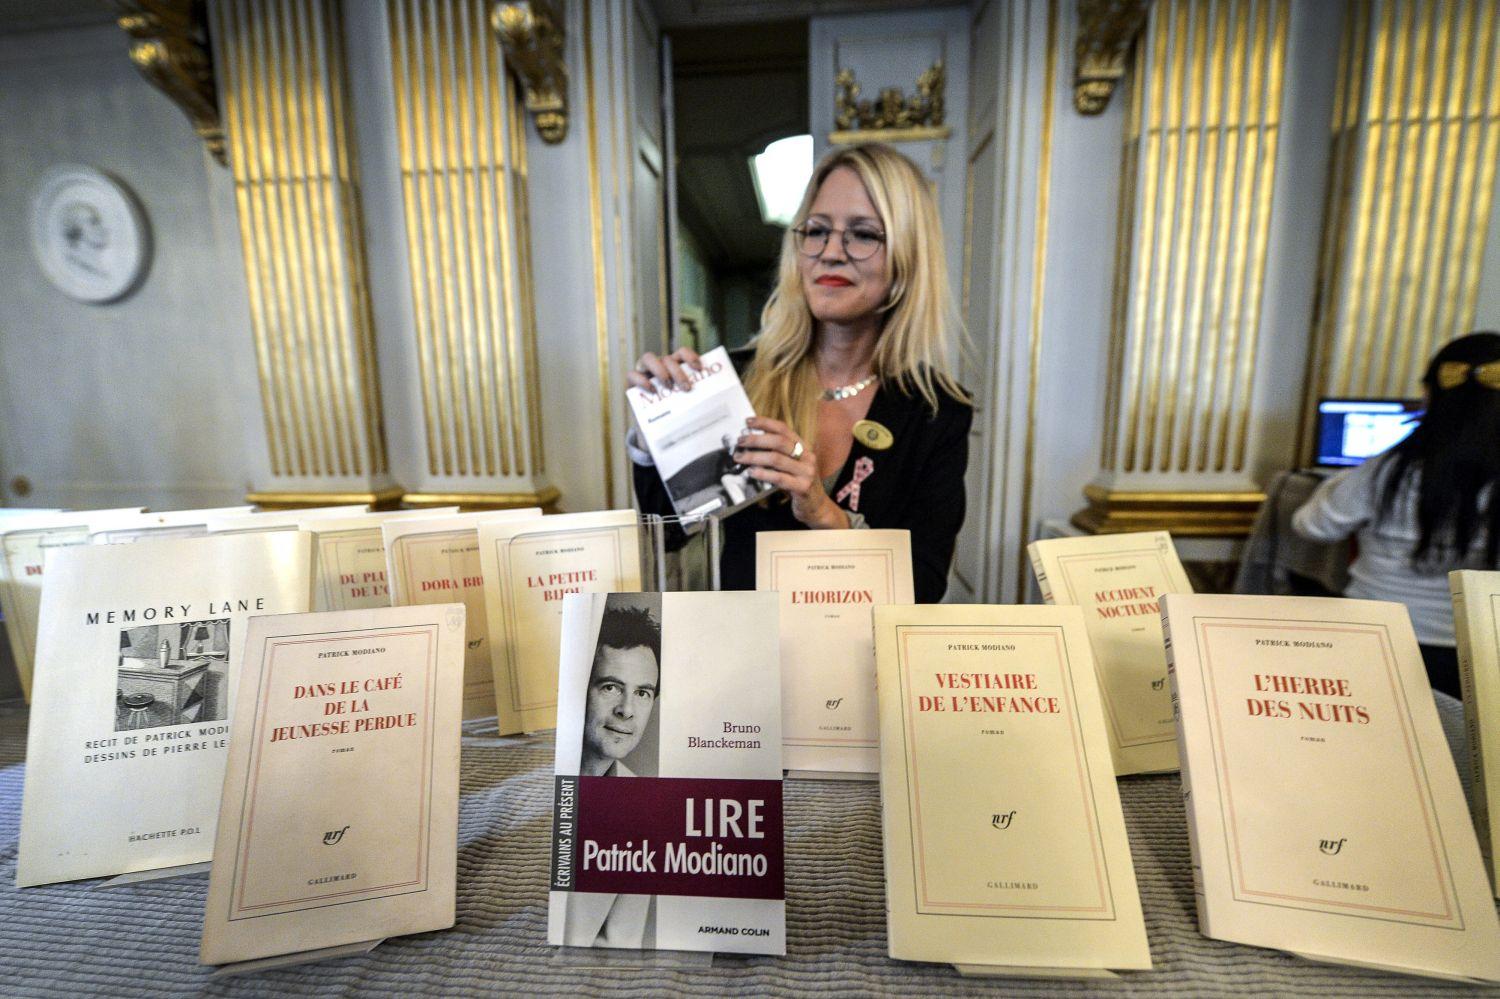 Modiano-könyvek csütörtökön a svéd akadémián. Igazi humanista